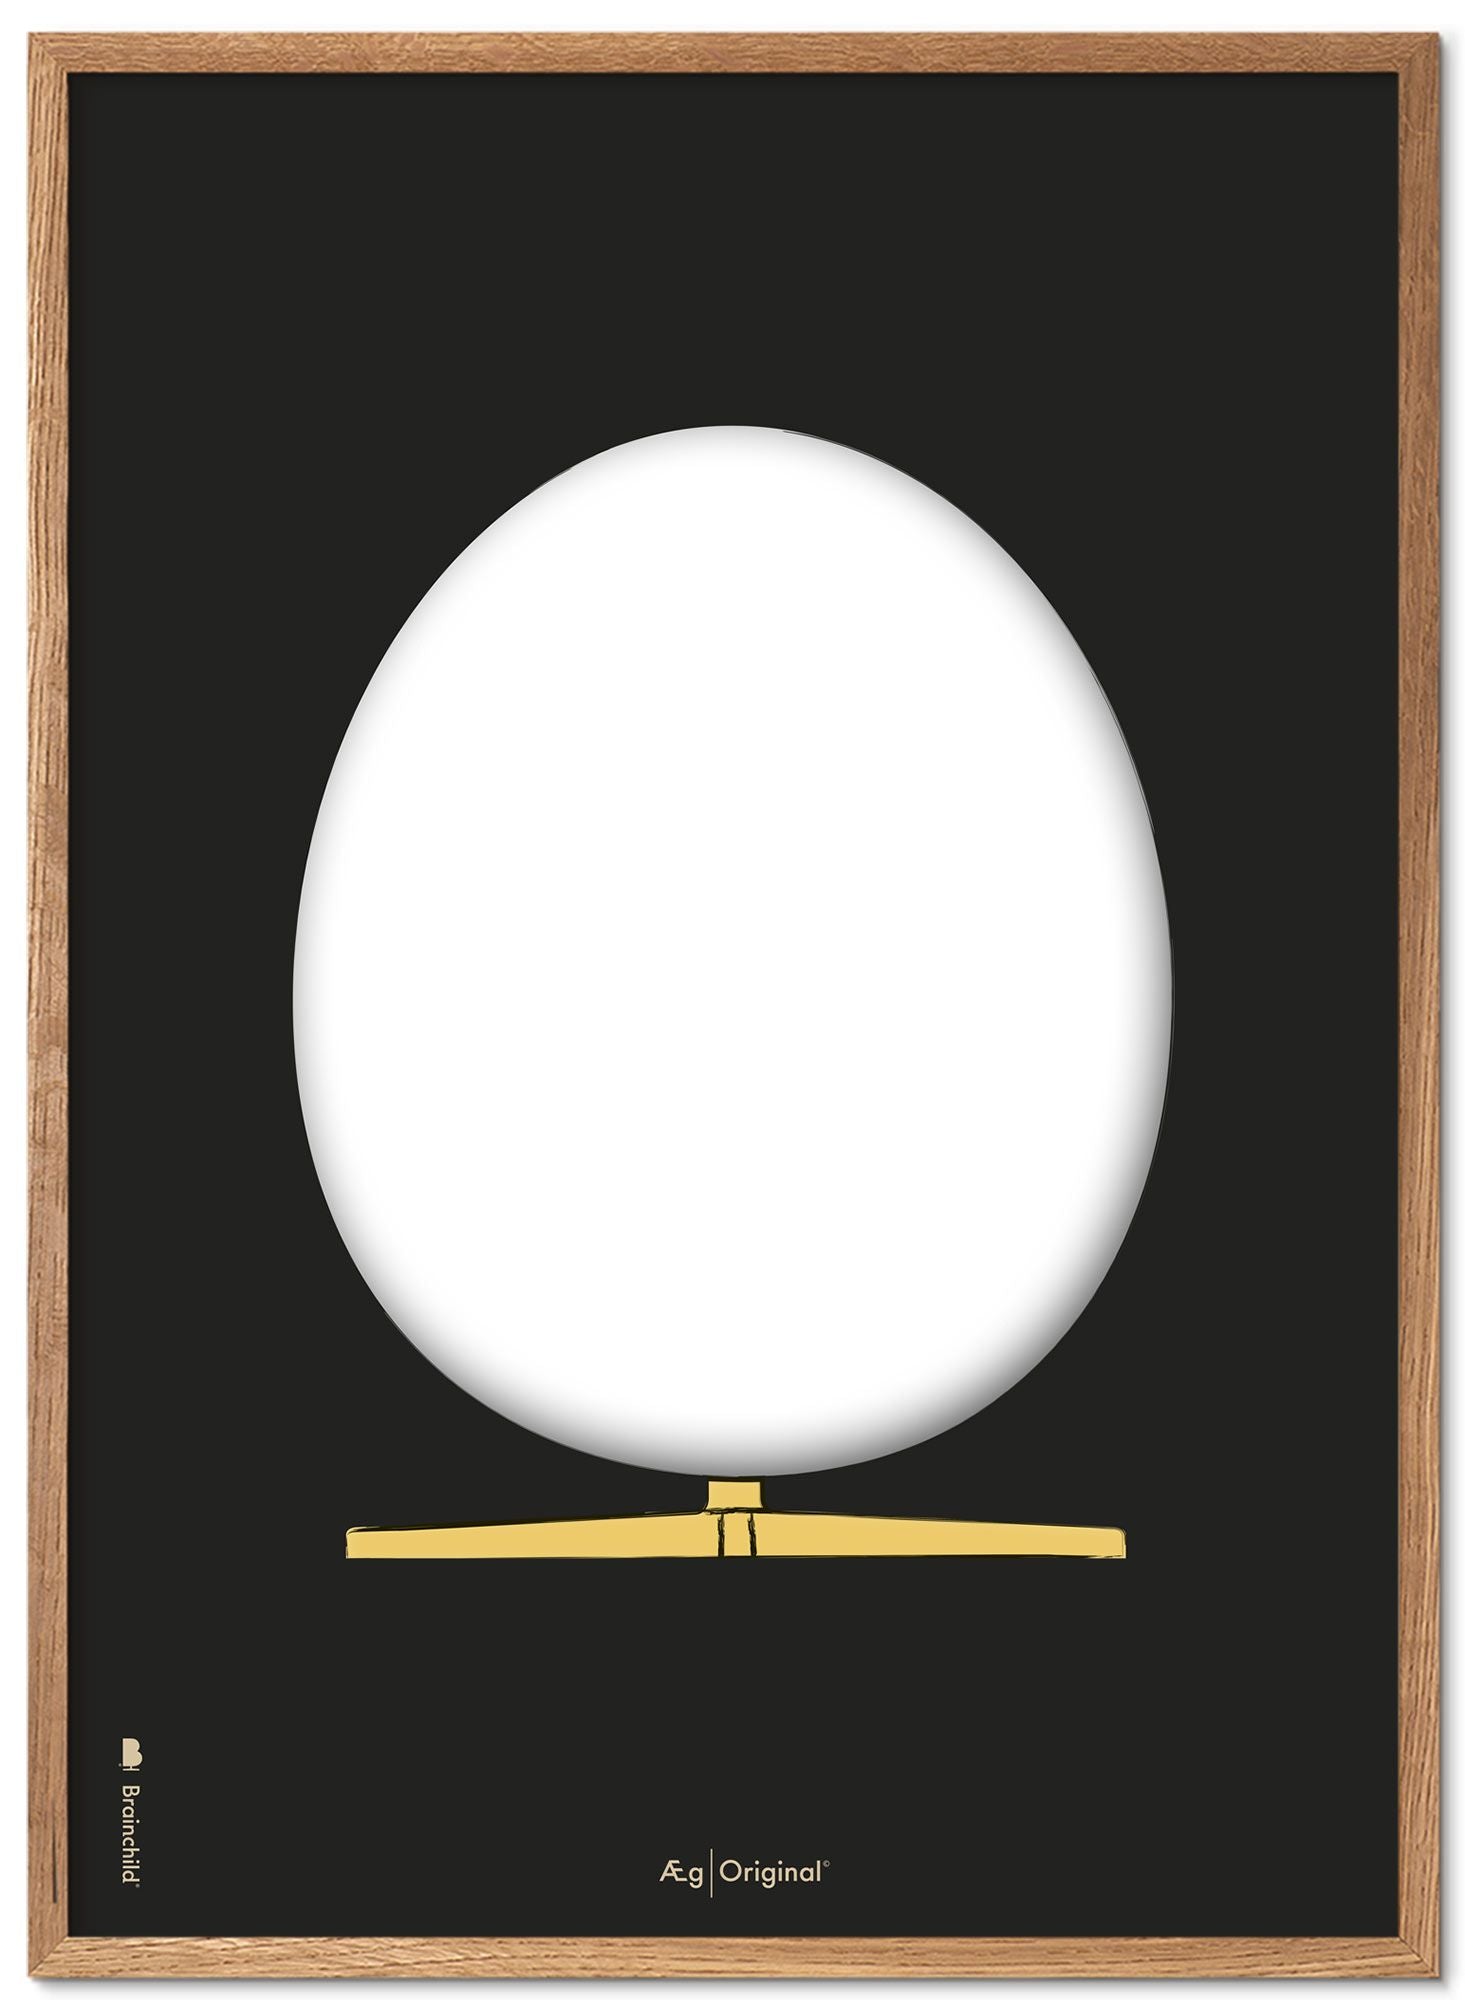 Hjernebarn æg design skitse plakat ramme lavet af let træ A5, sort baggrund